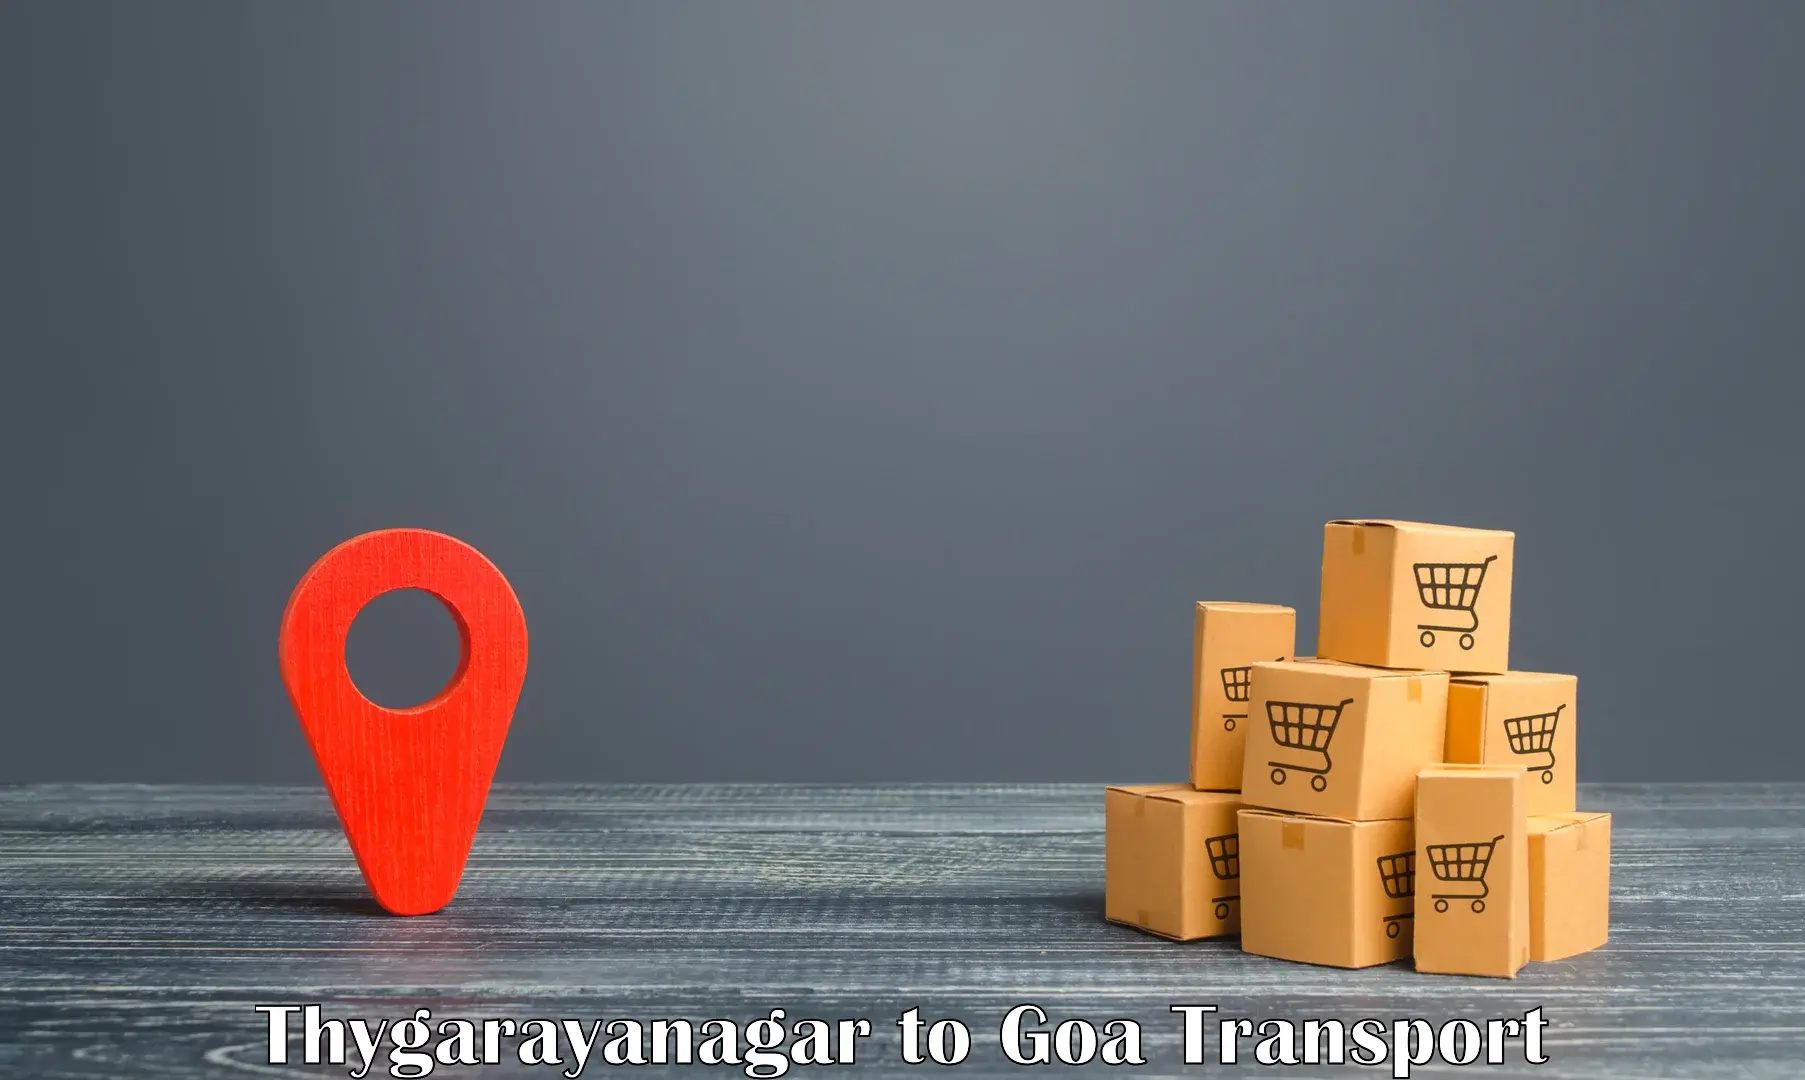 Daily transport service in Thygarayanagar to Vasco da Gama